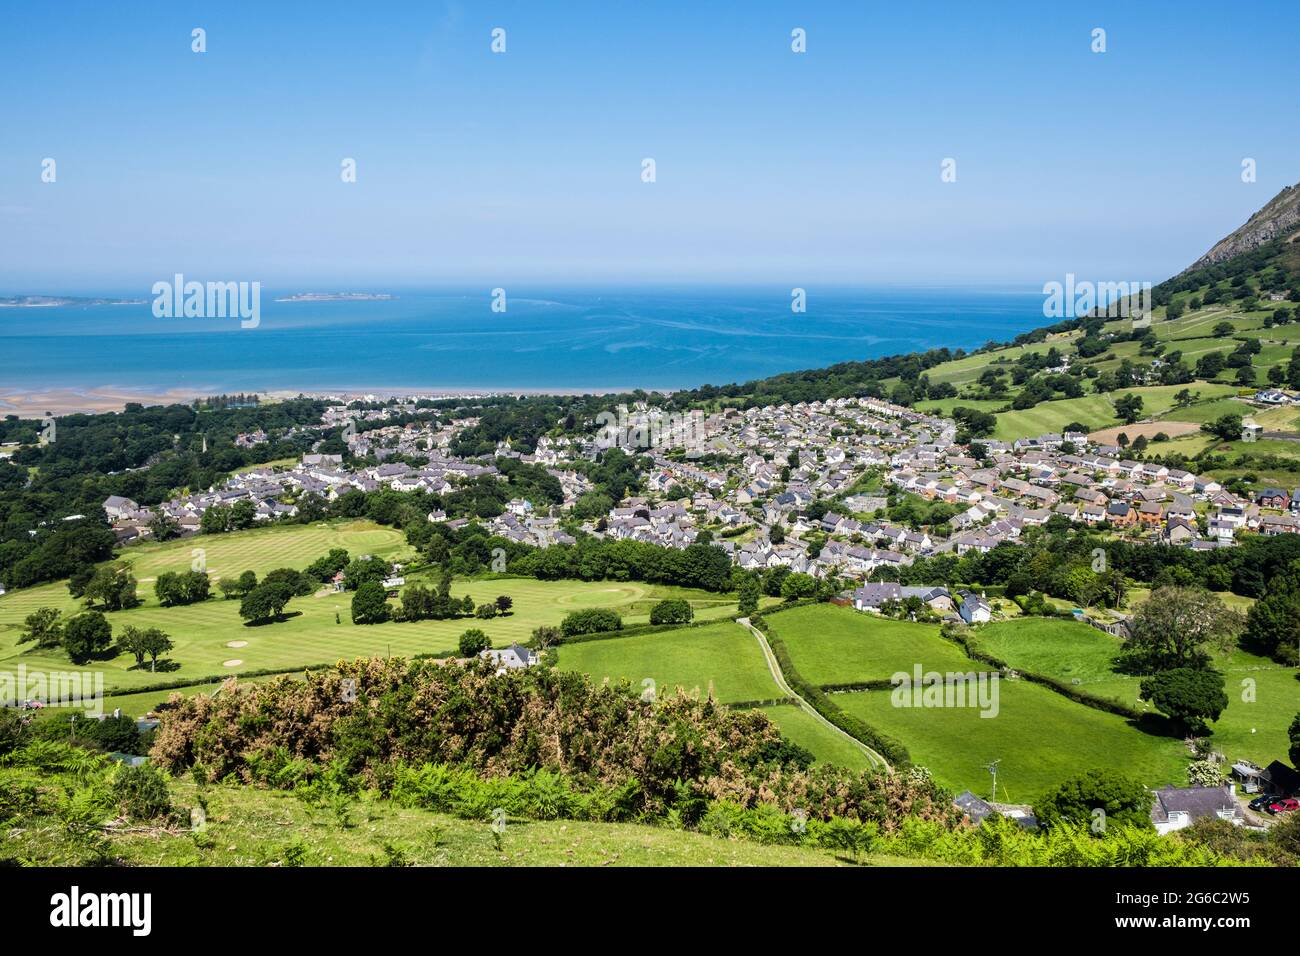 Vue imprenable sur le village de la côte nord du pays de Galles depuis les collines du bord nord de Snowdonia. Llanfairfechan, Conwy, nord du pays de Galles, Royaume-Uni, Grande-Bretagne Banque D'Images